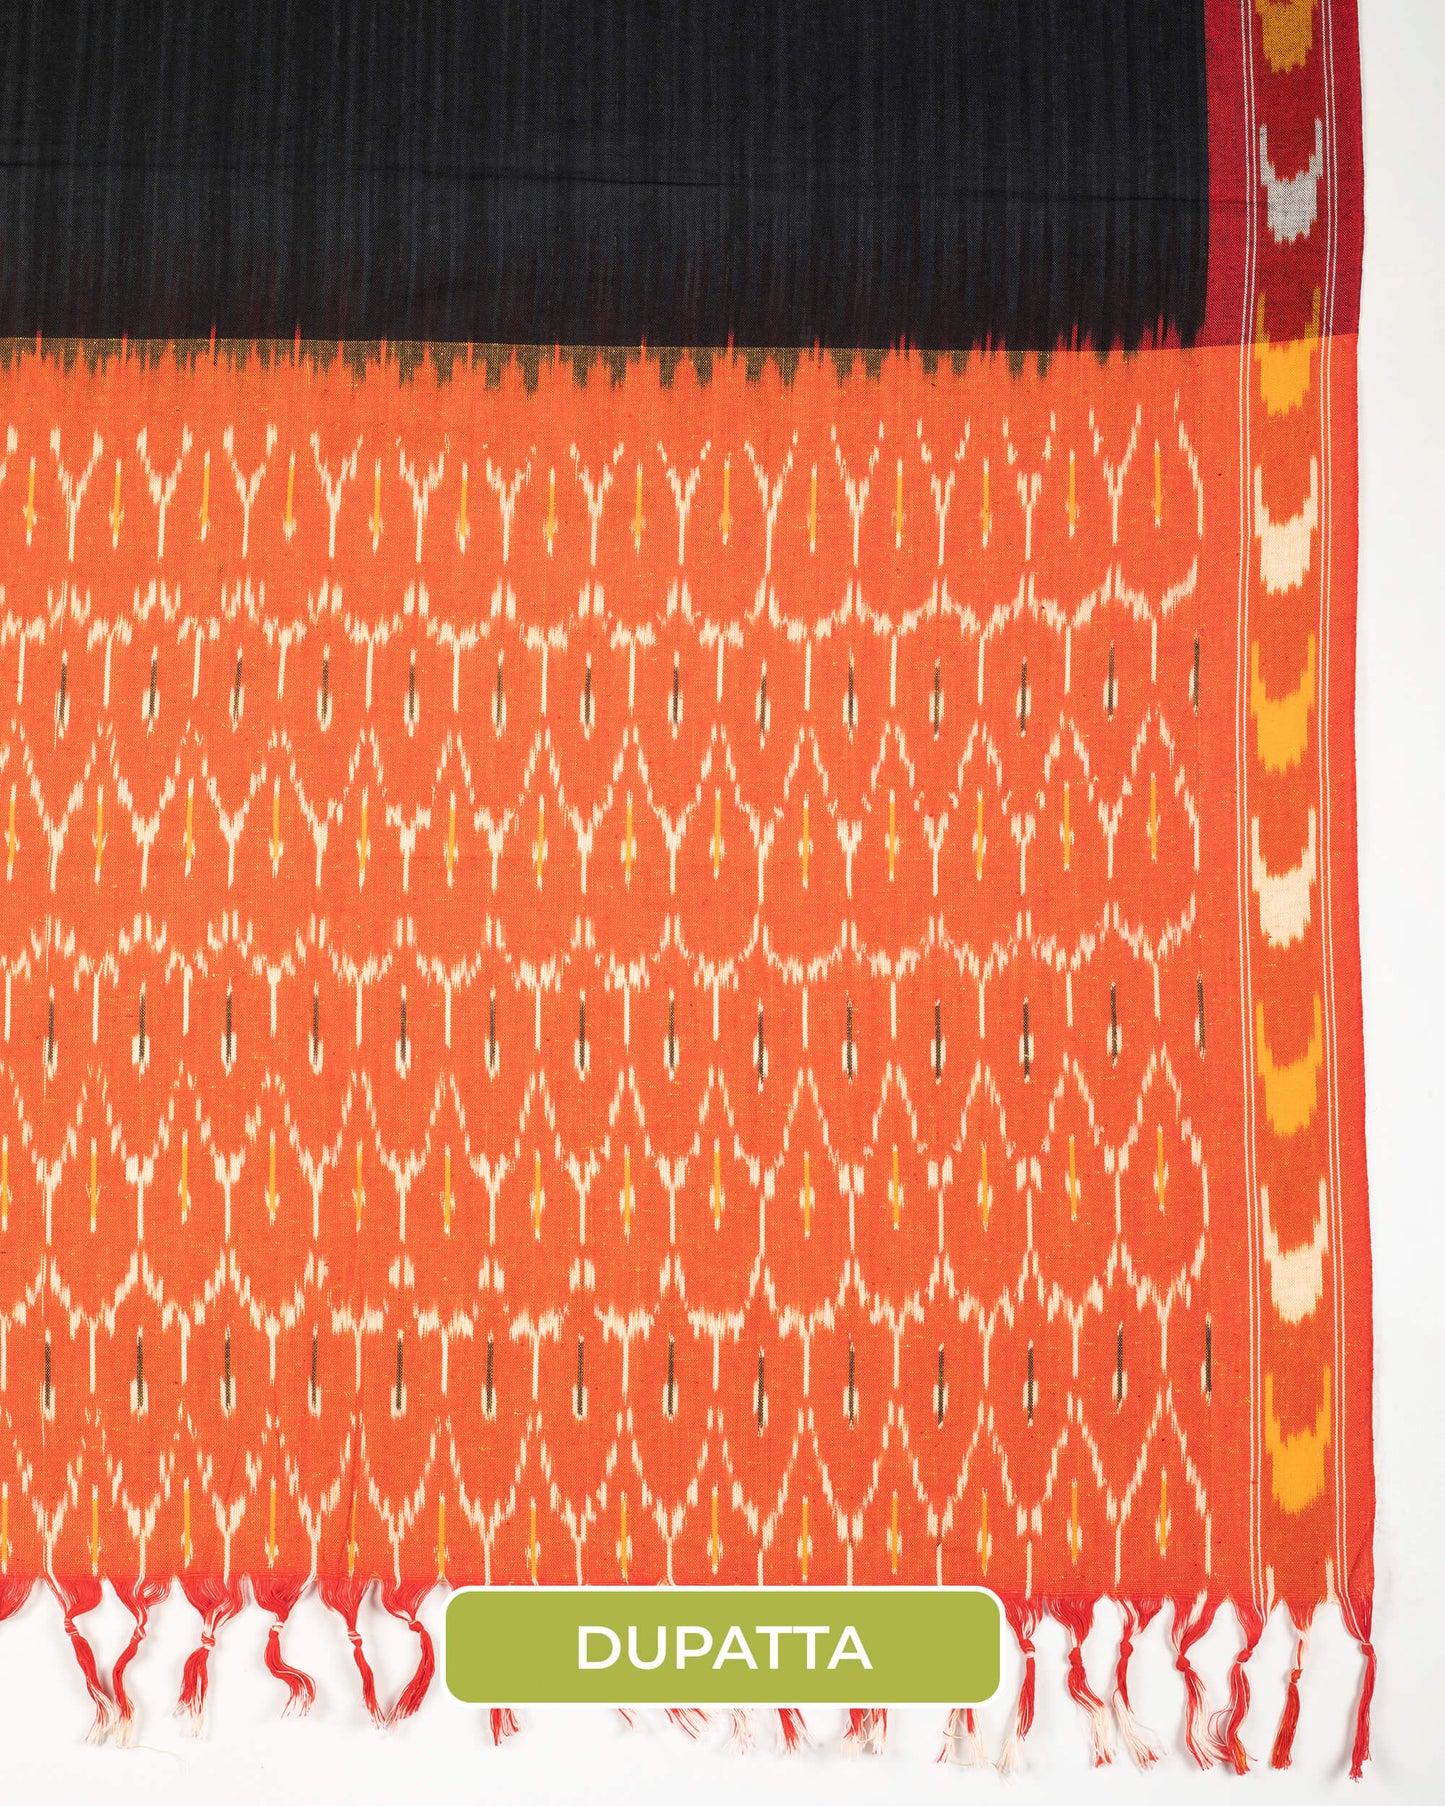 Pochampally Ikat Weave Cotton 3PC Unstiched Suit Set